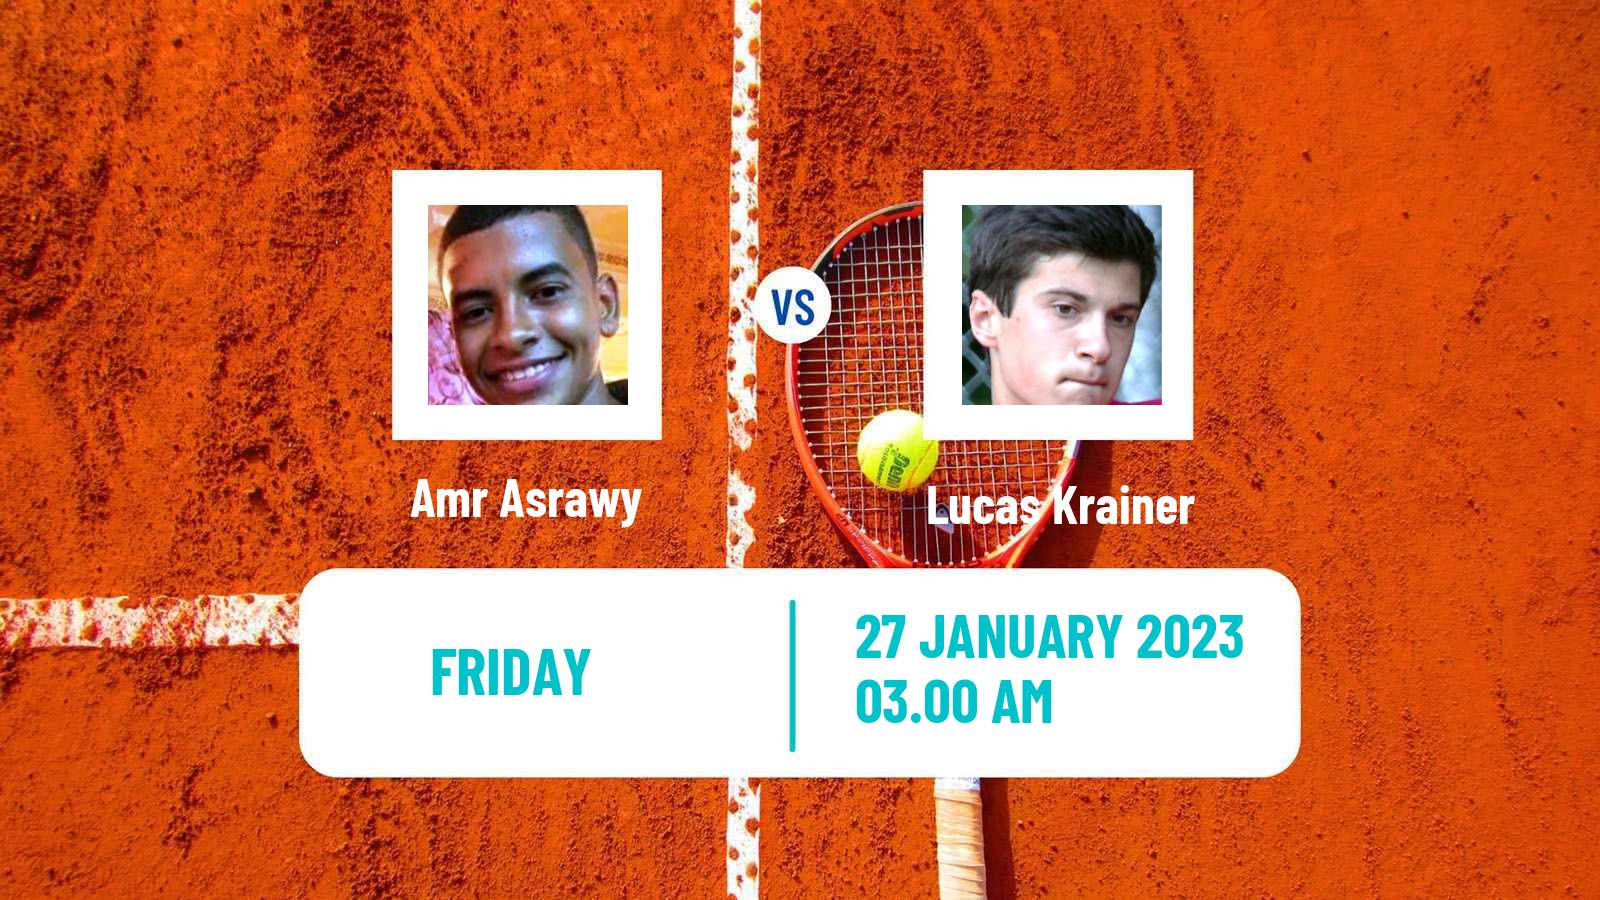 Tennis ITF Tournaments Amr Asrawy - Lucas Krainer